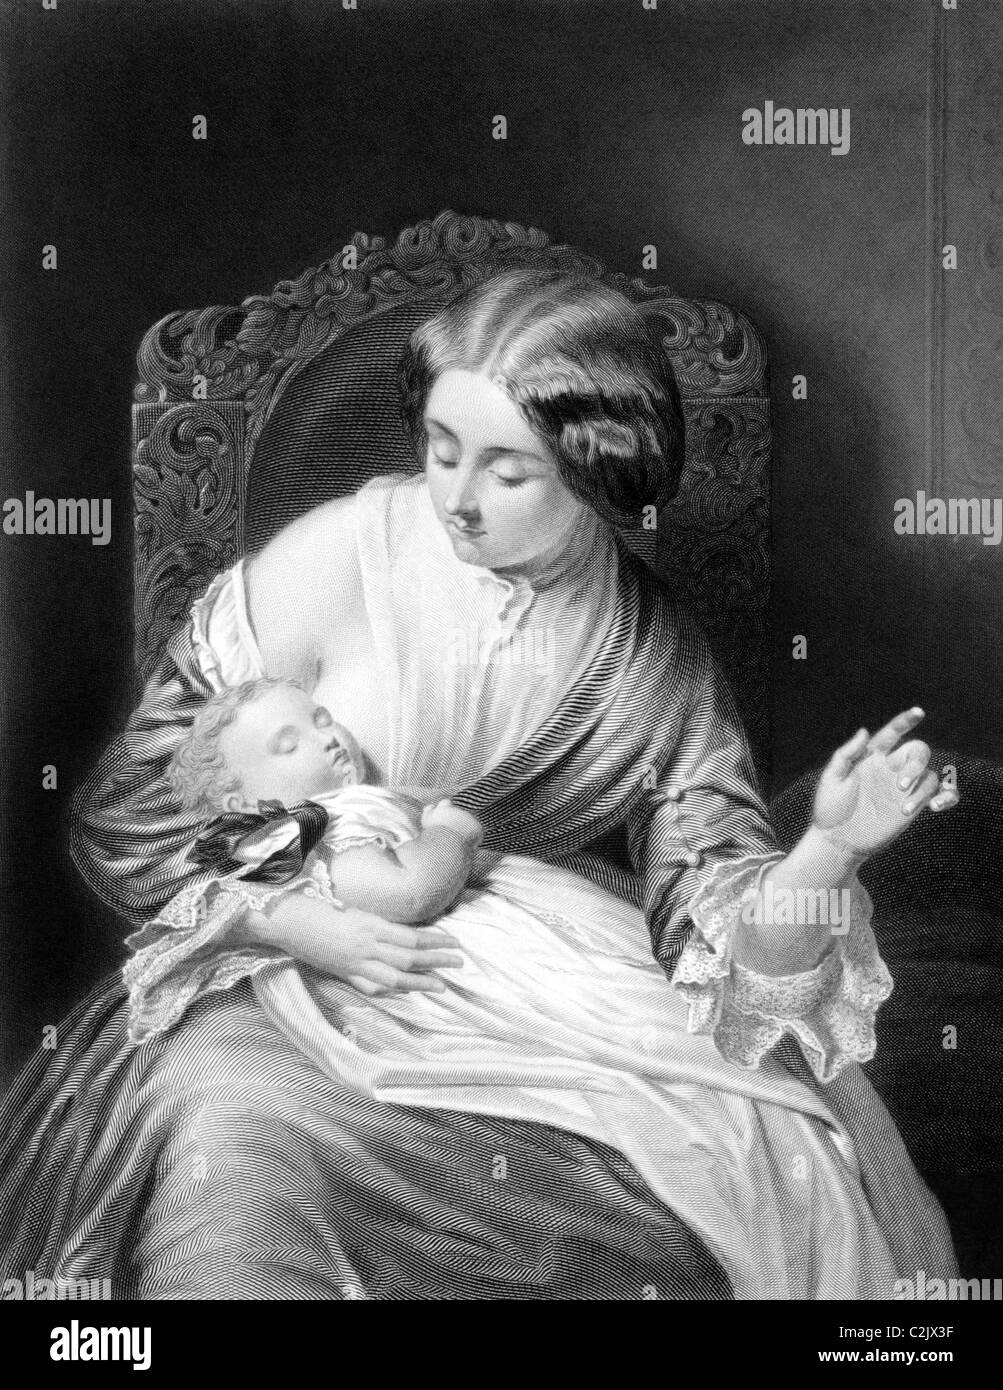 Mutter und ihr schlafendes Kind auf Kupferstich aus dem Jahr 1883. Gestochen von J.Franck nach einem Gemälde von J.H.S.Mann. Stockfoto